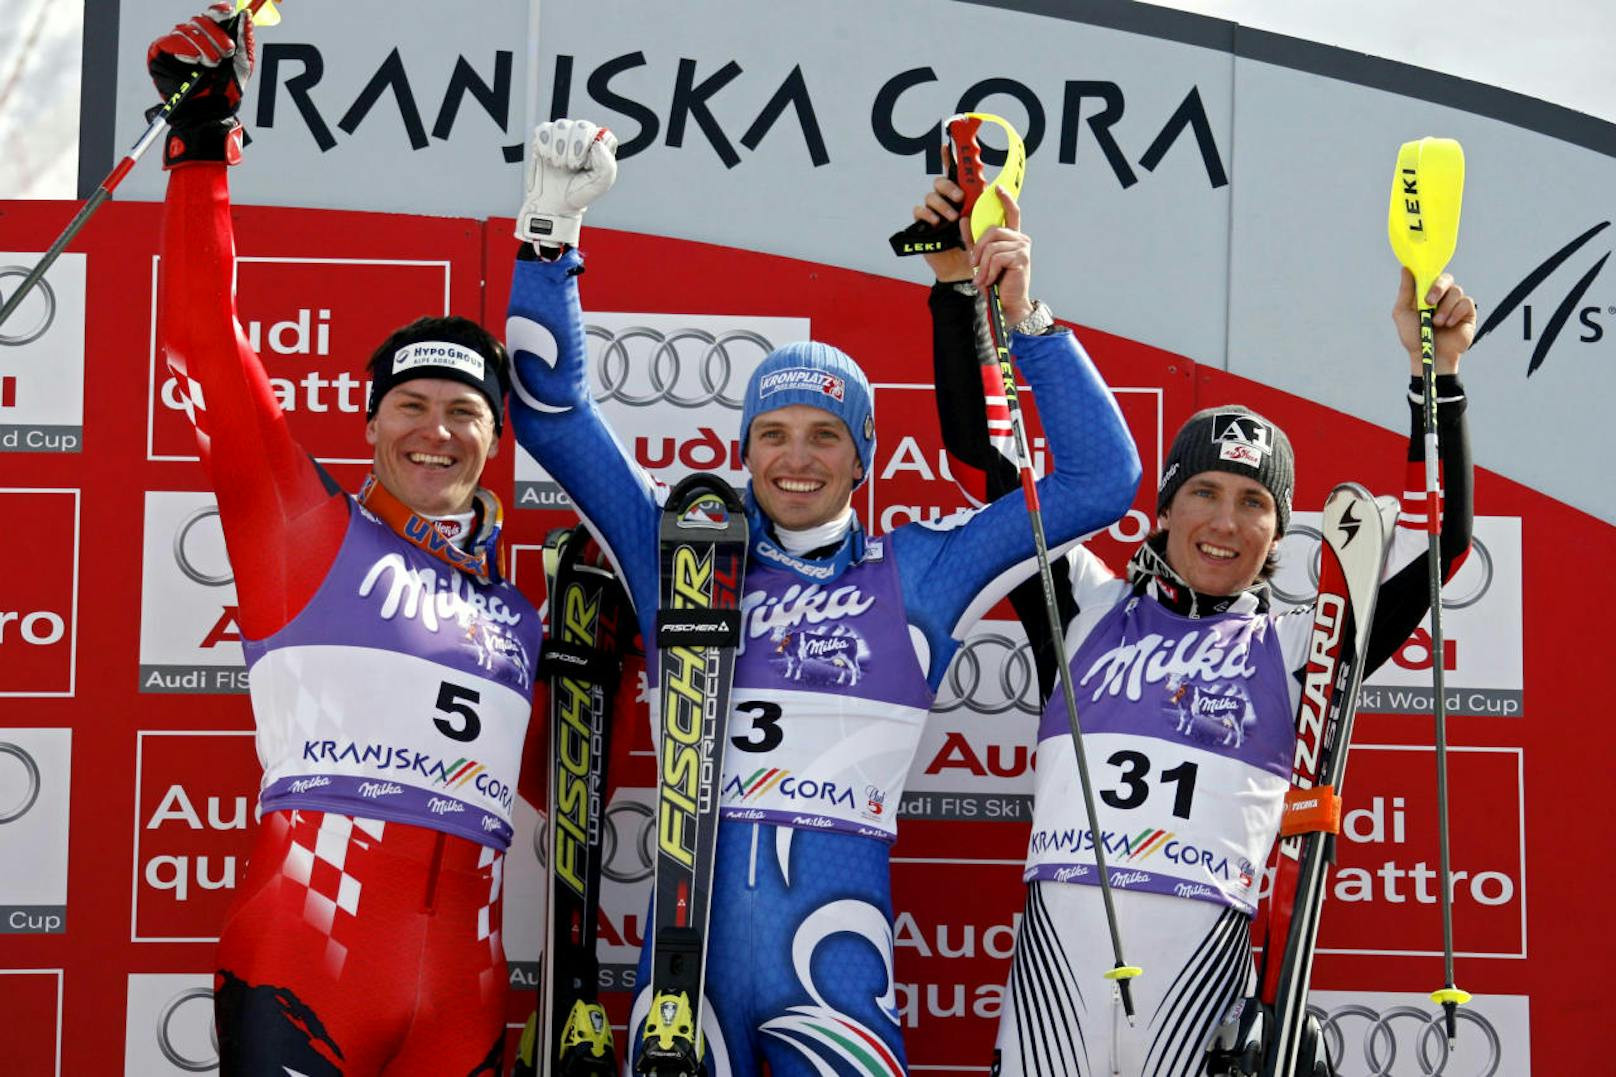 Neben Platz drei in Kranjska Gora folgte auch ein dritter Platz im Slalom von Bormio. Das ergab den 15. Rang in der Slalom-Wertung. 